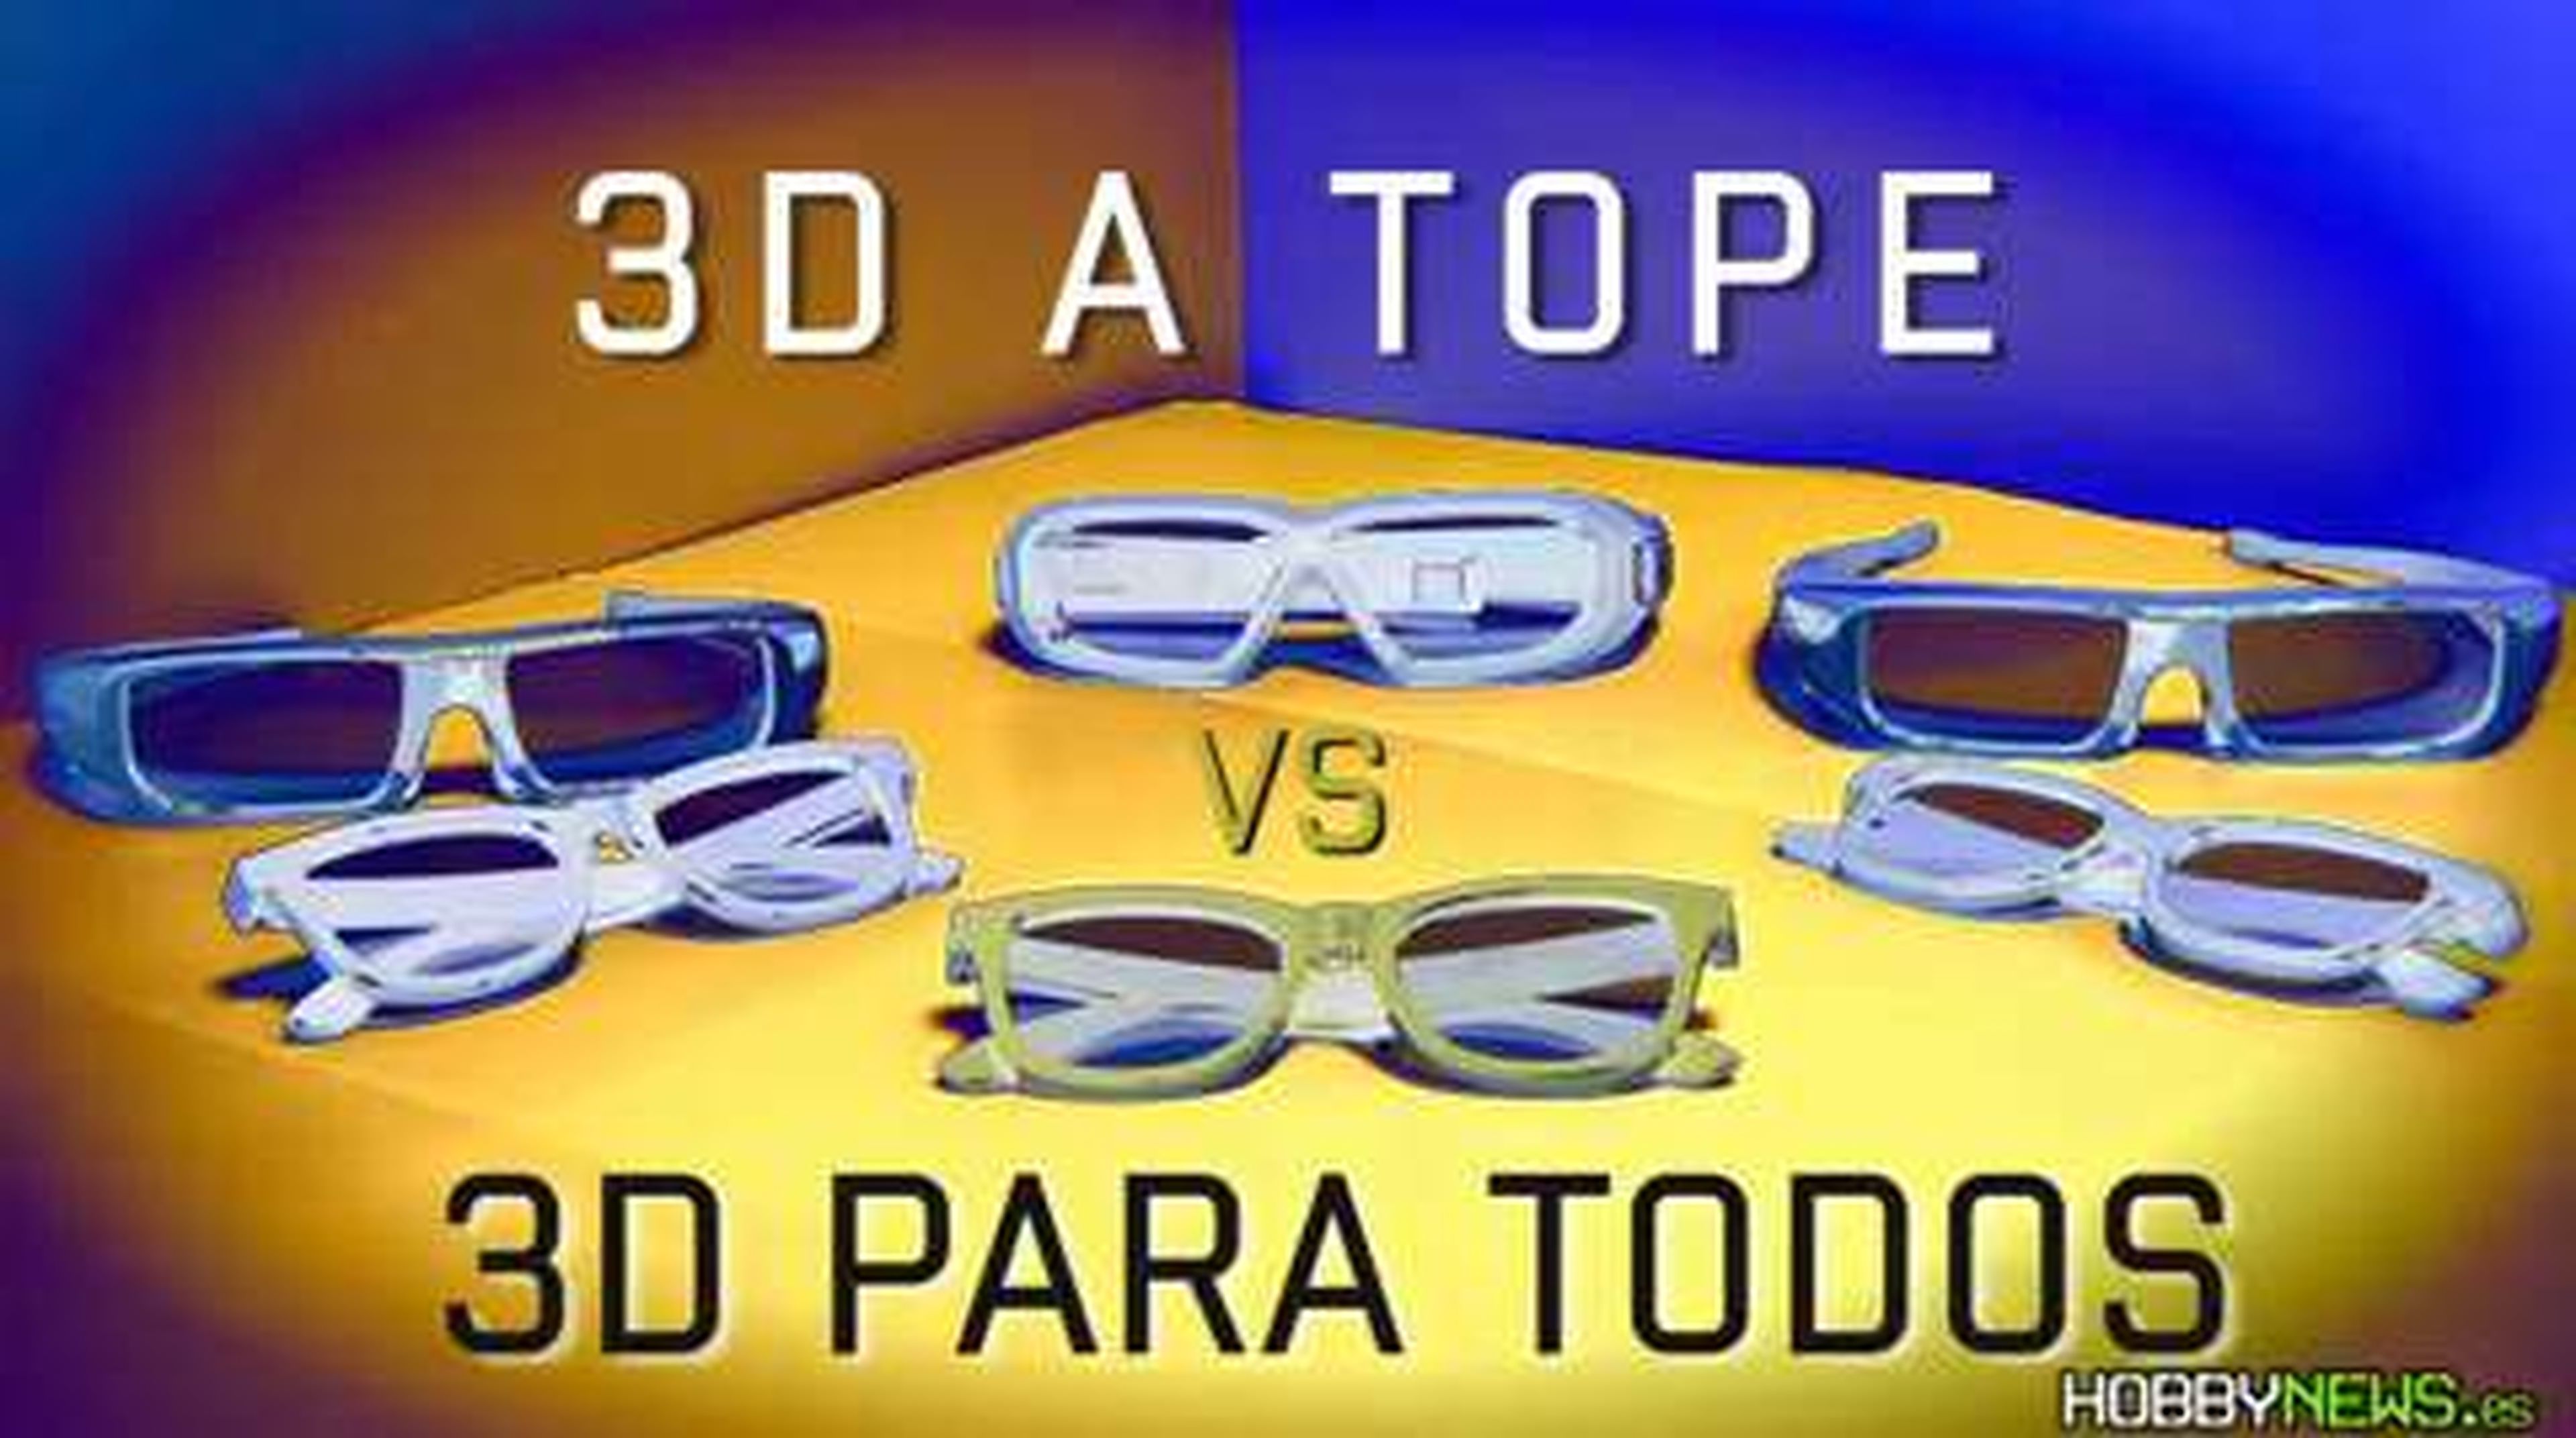 Cara a cara: 3D caro vs 3D barato en HobbyNews.es